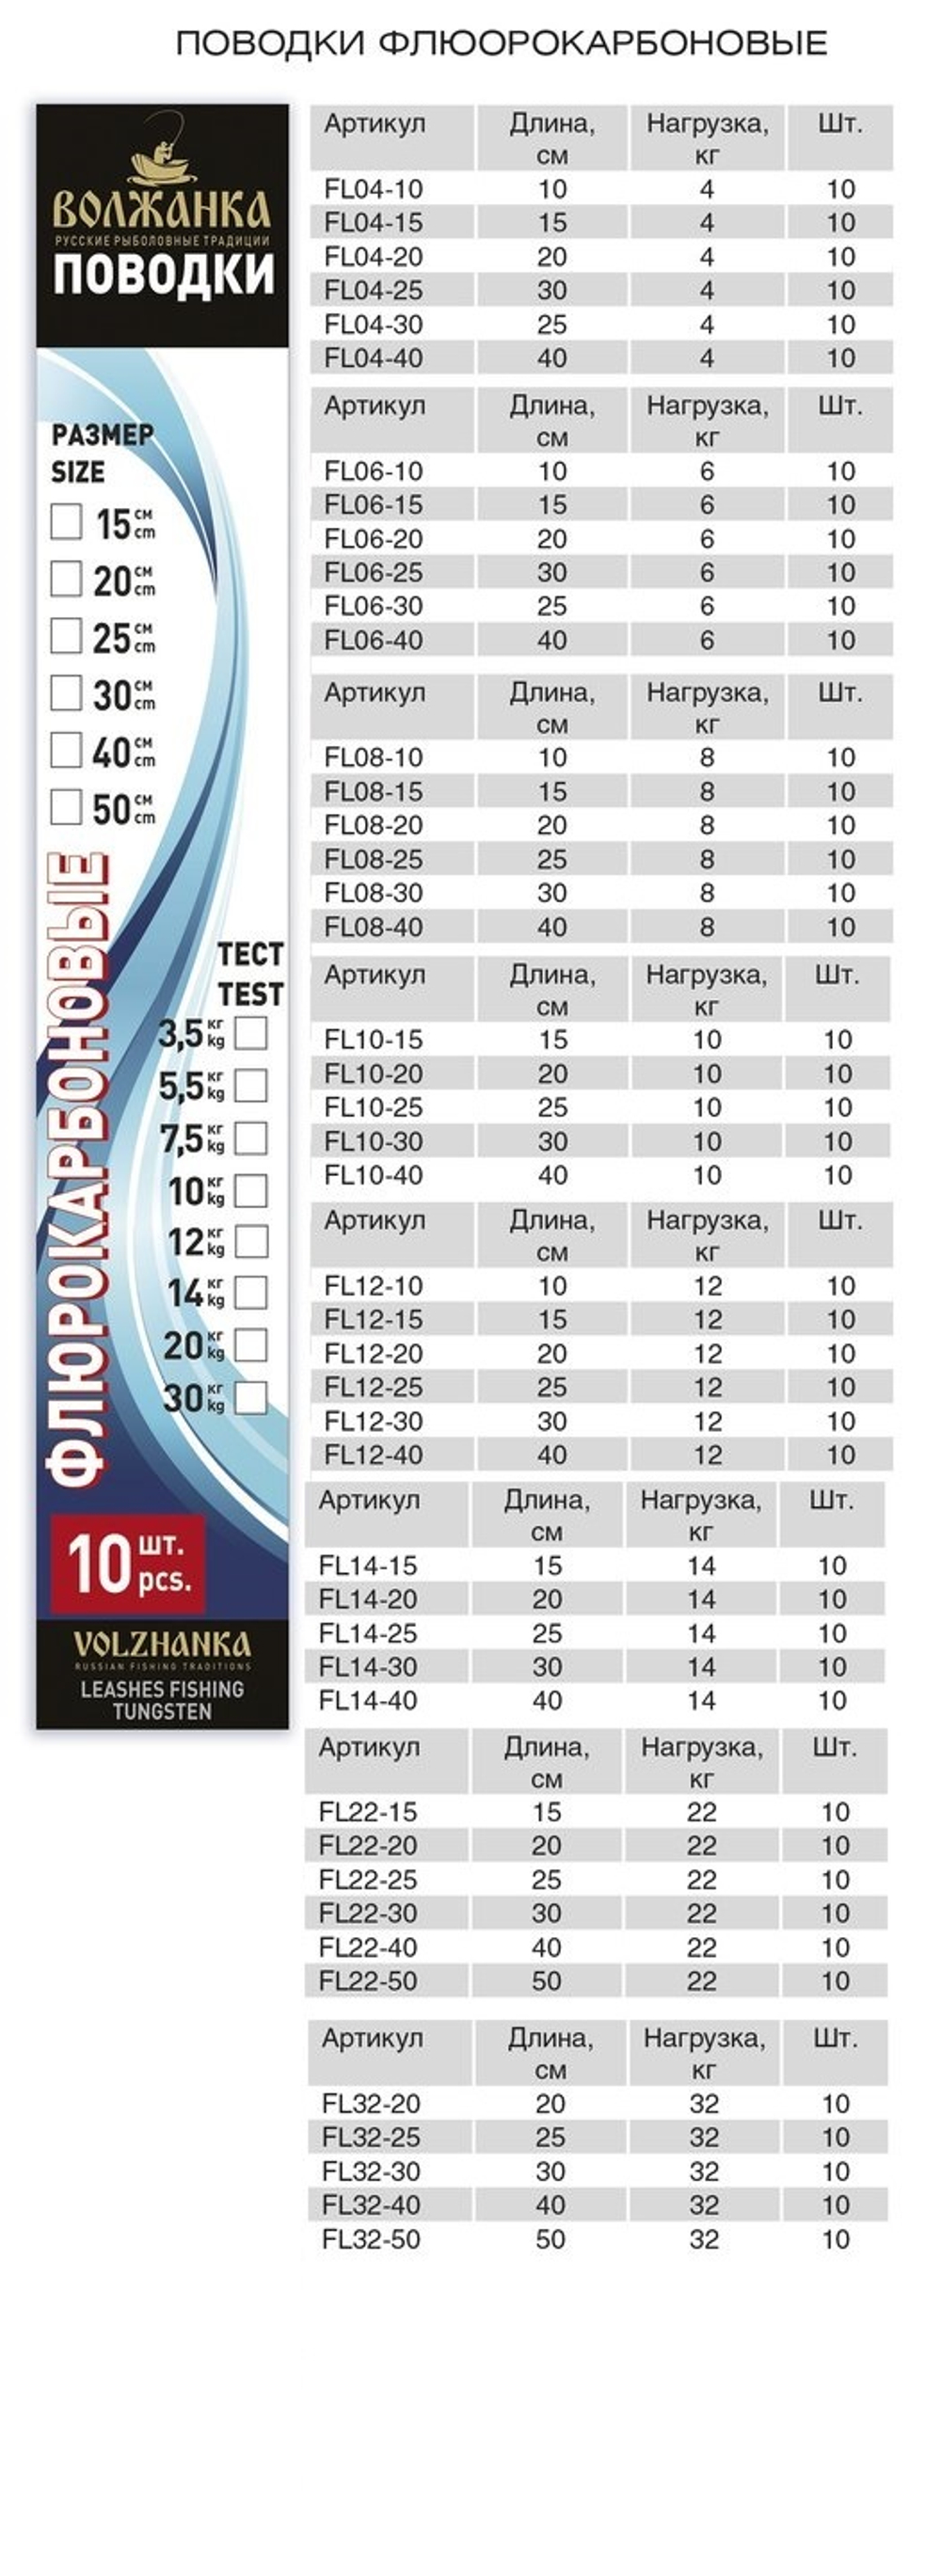 Набор флюрокарбоновых поводков - 10см,12кг (10шт/уп)